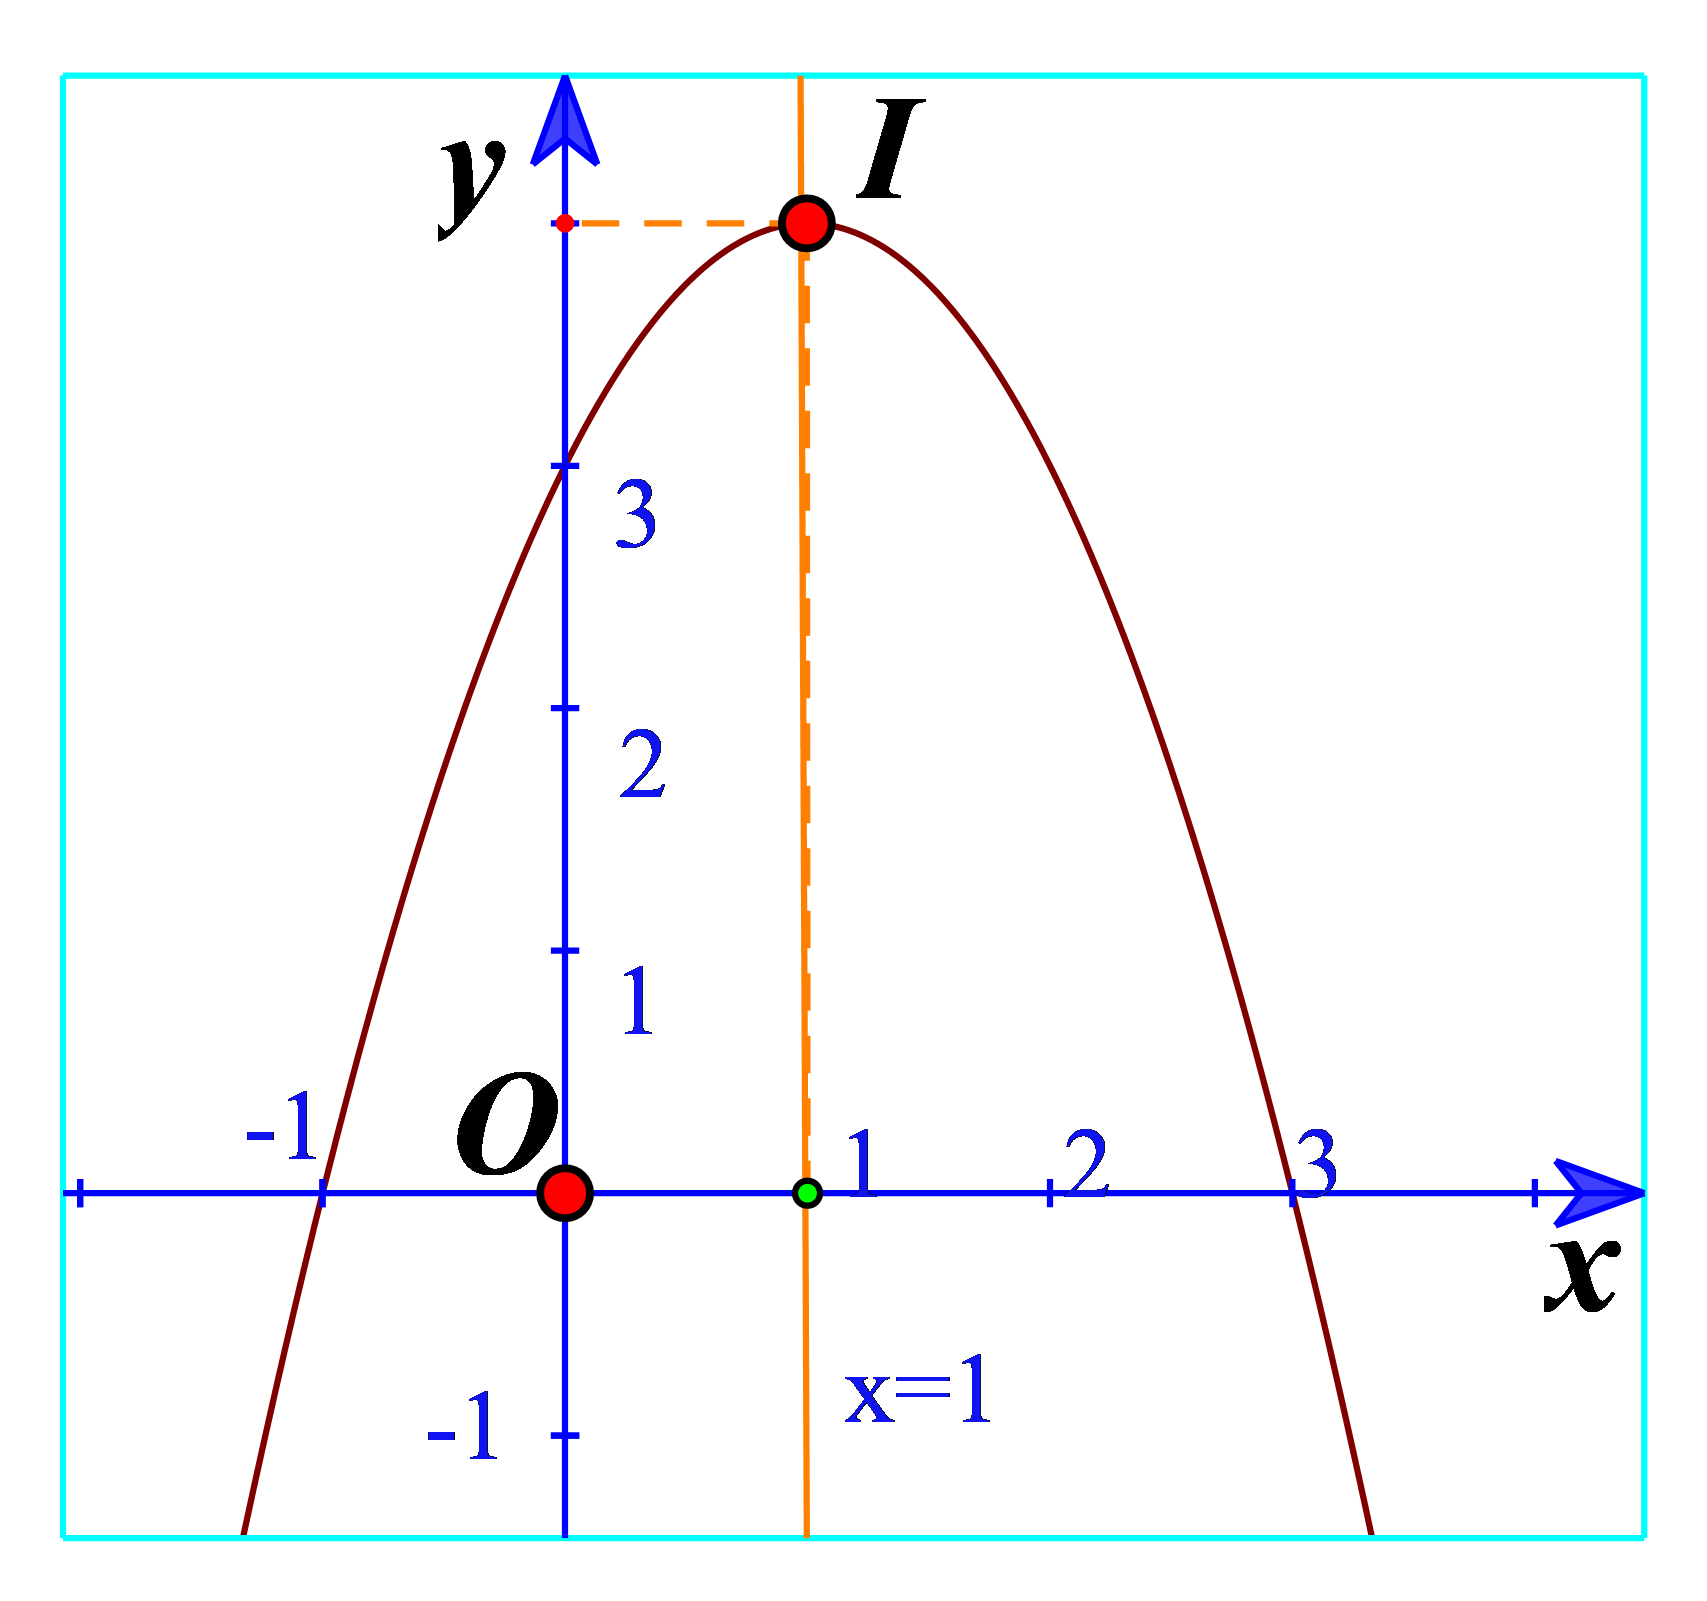 Đồ thị hàm số là một phương pháp quan trọng để hình dung các hàm số và phương trình trong môn toán. Xem hình ảnh để hiểu cách phản ánh các hàm số và tìm kiếm mối liên hệ giữa chúng.